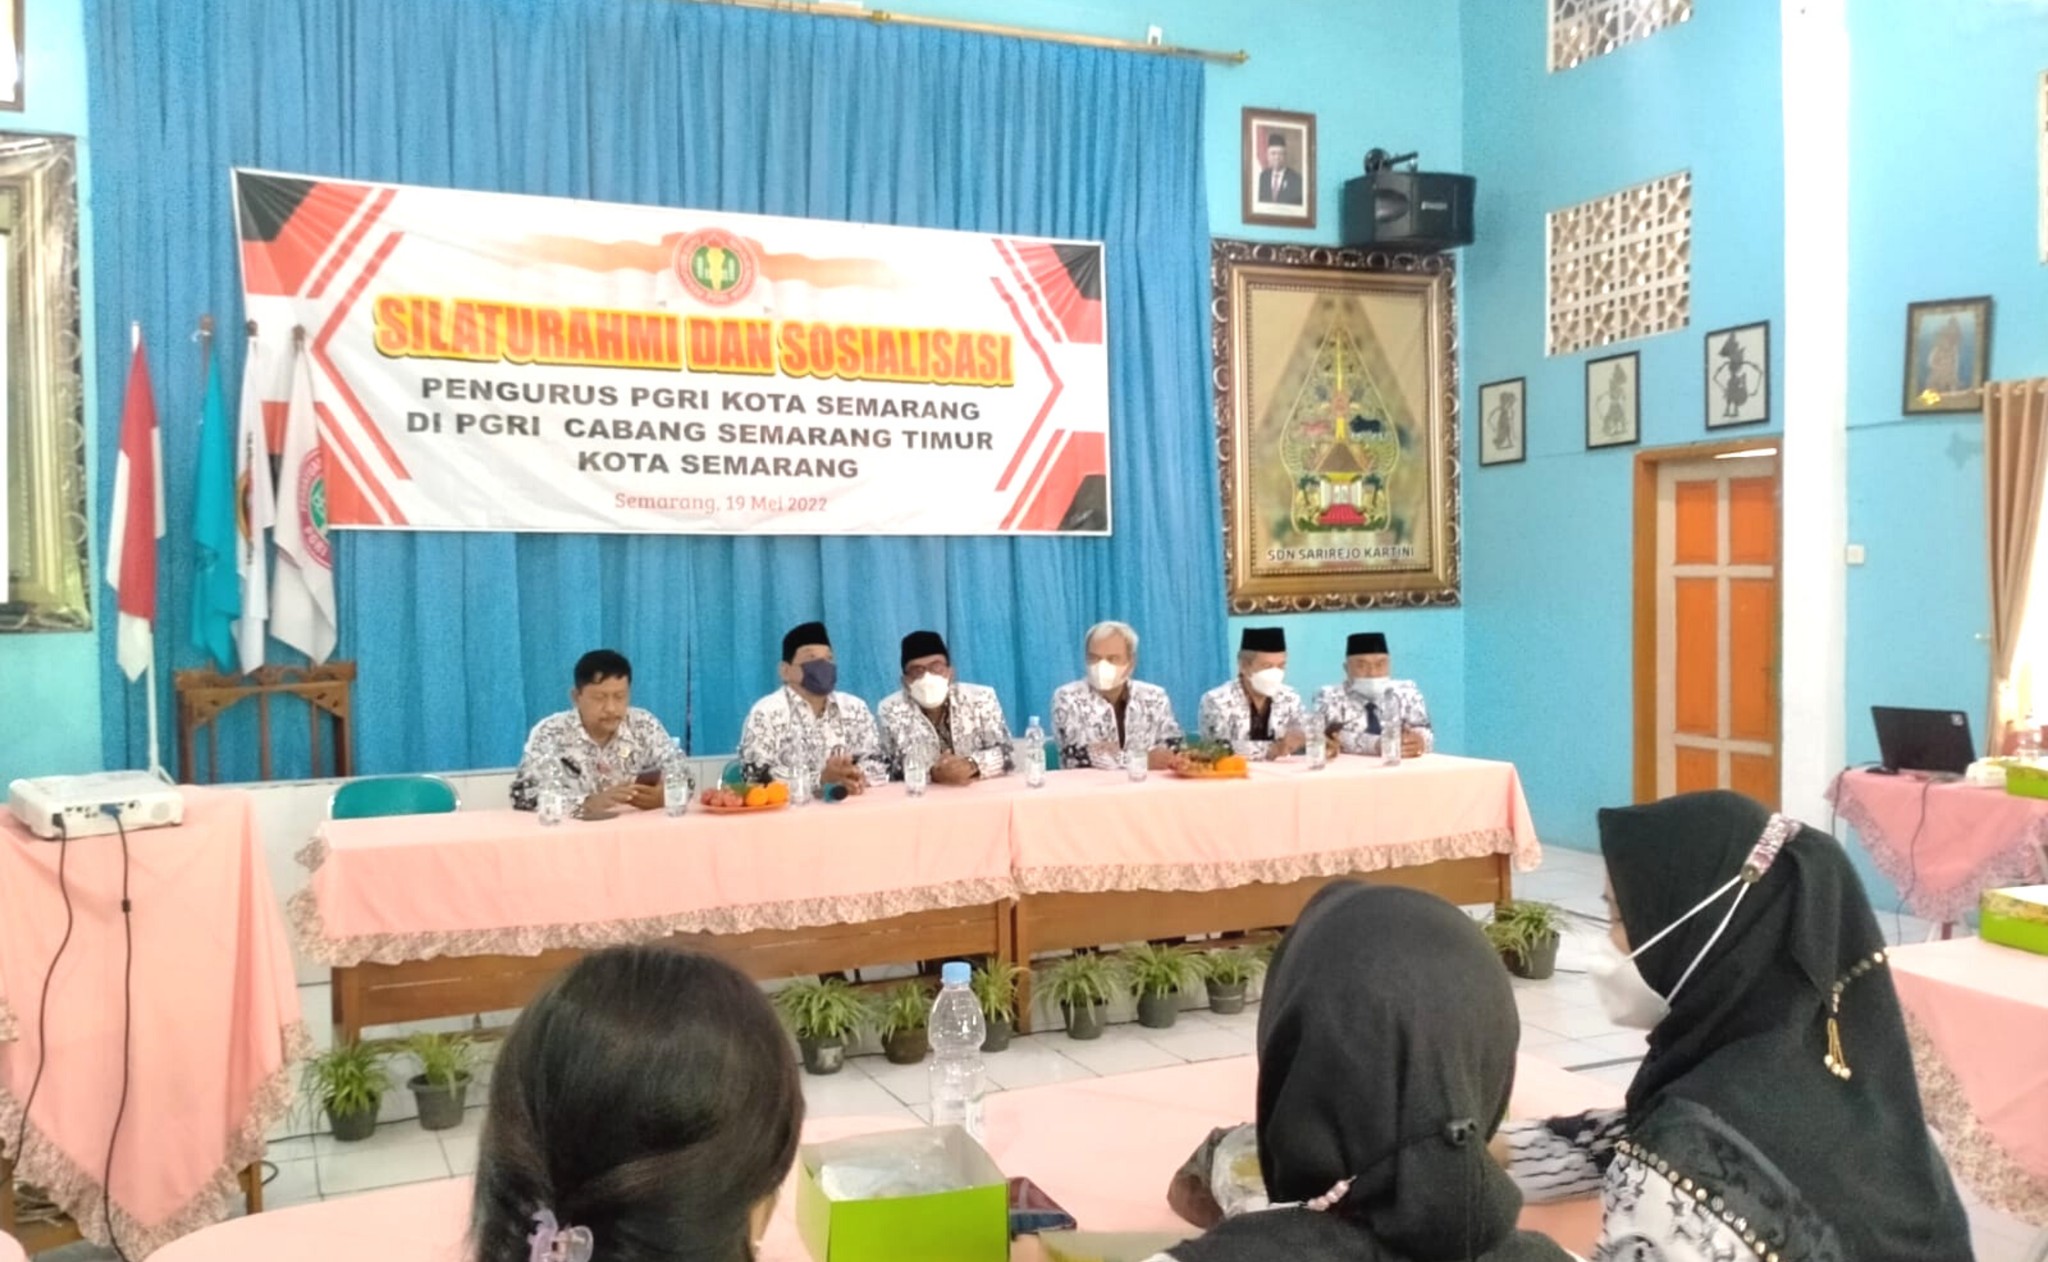 Silaturrahmi dan Sosialisasi Sistem Keanggotaan Baru oleh Pengurus PGRI Kota Semarang di PGRI Cabang Semarang Timur